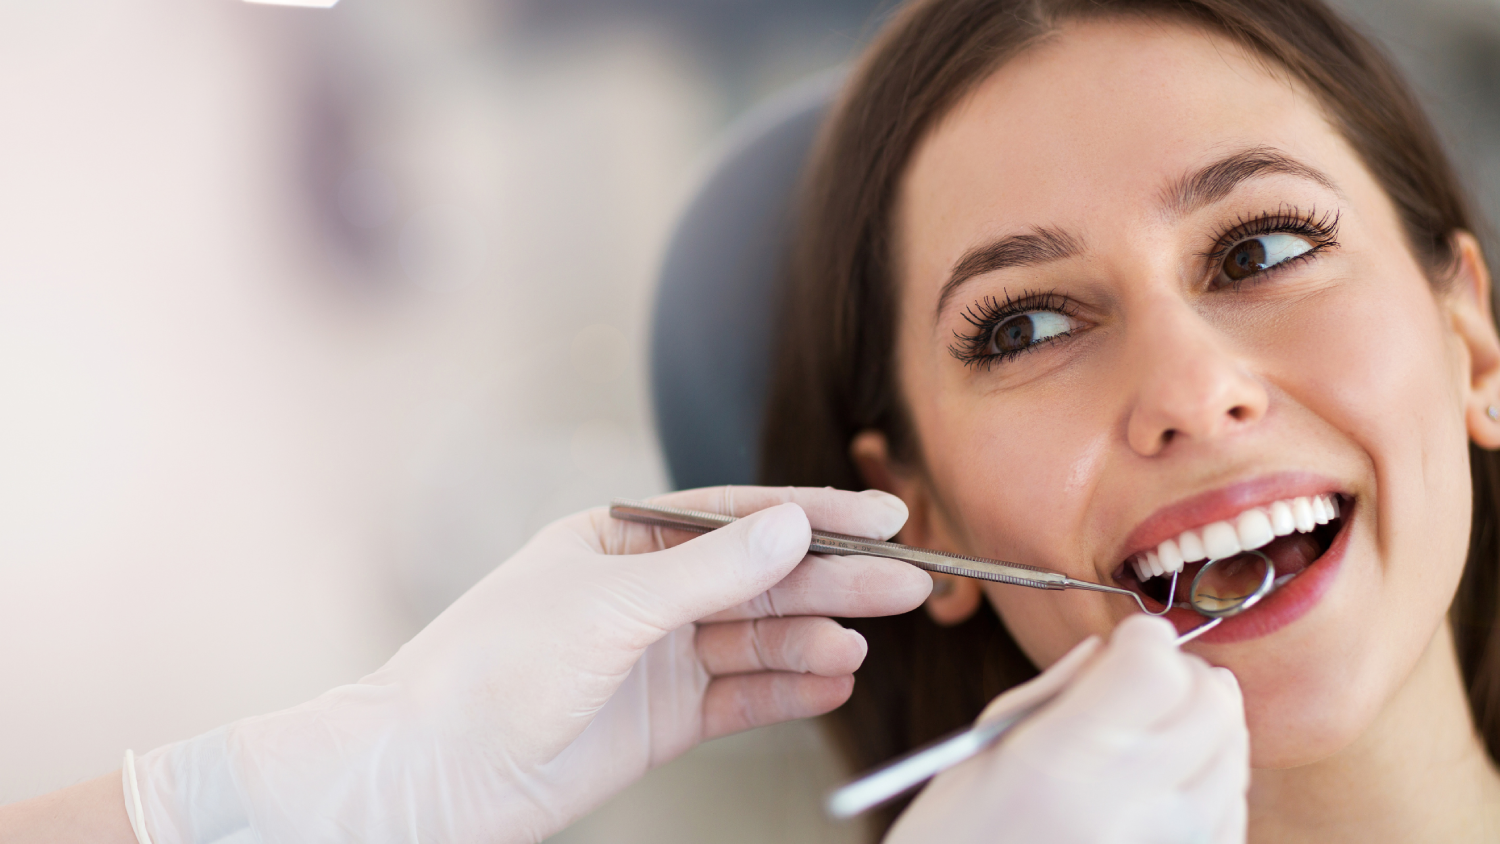 Teeth whitening treatment in coimbatore